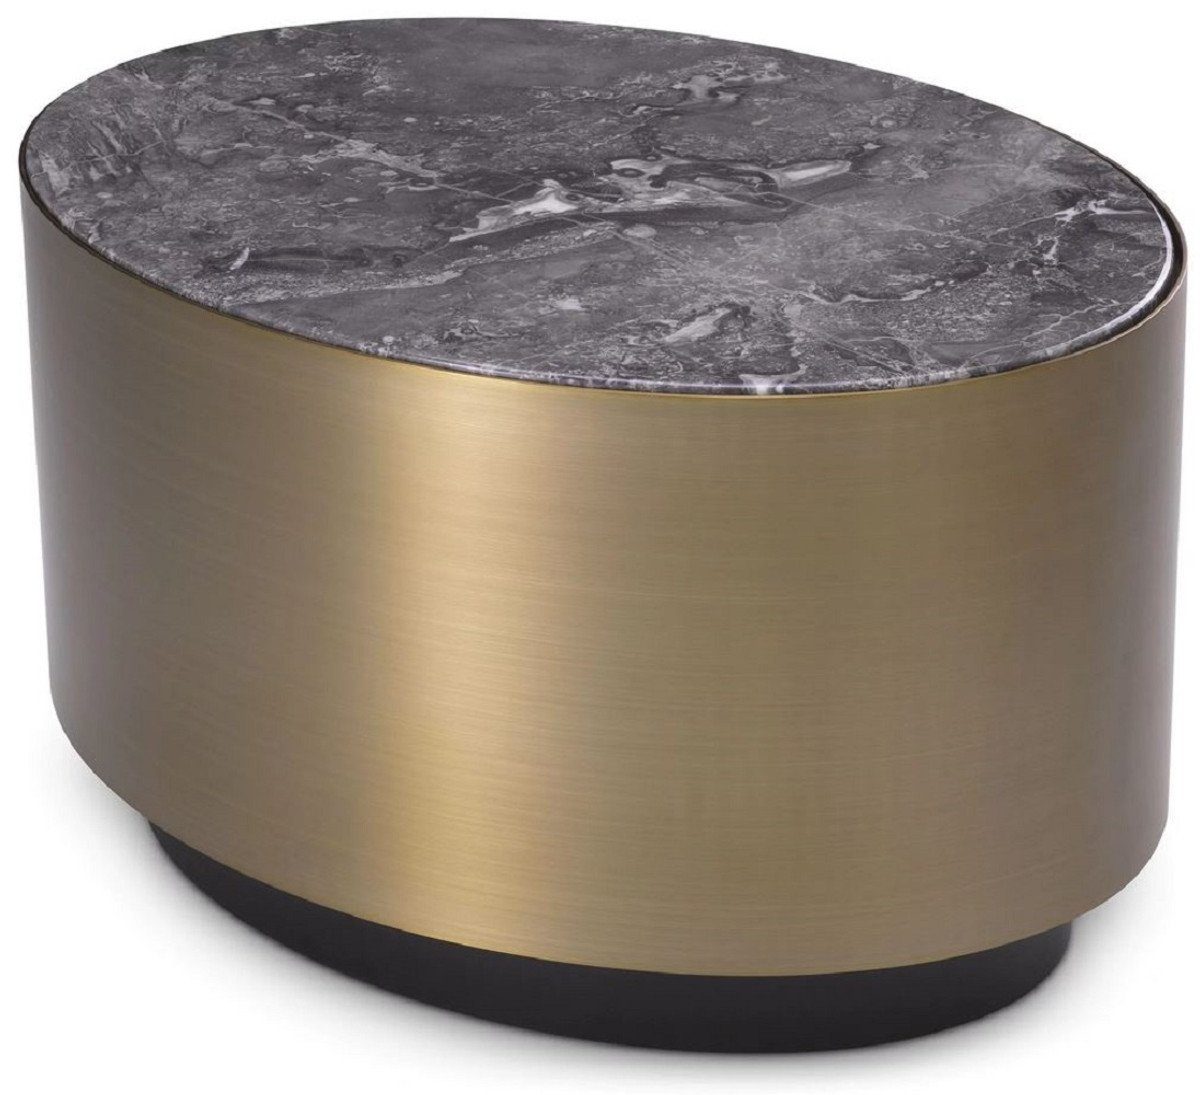 Casa Padrino Beistelltisch Luxus Beistelltisch Grau / Messingfarben / Schwarz 65 x 48 x H. 38,5 cm - Ovaler Edelstahl Tisch mit Marmorplatte - Luxus Möbel - Luxus Qualität